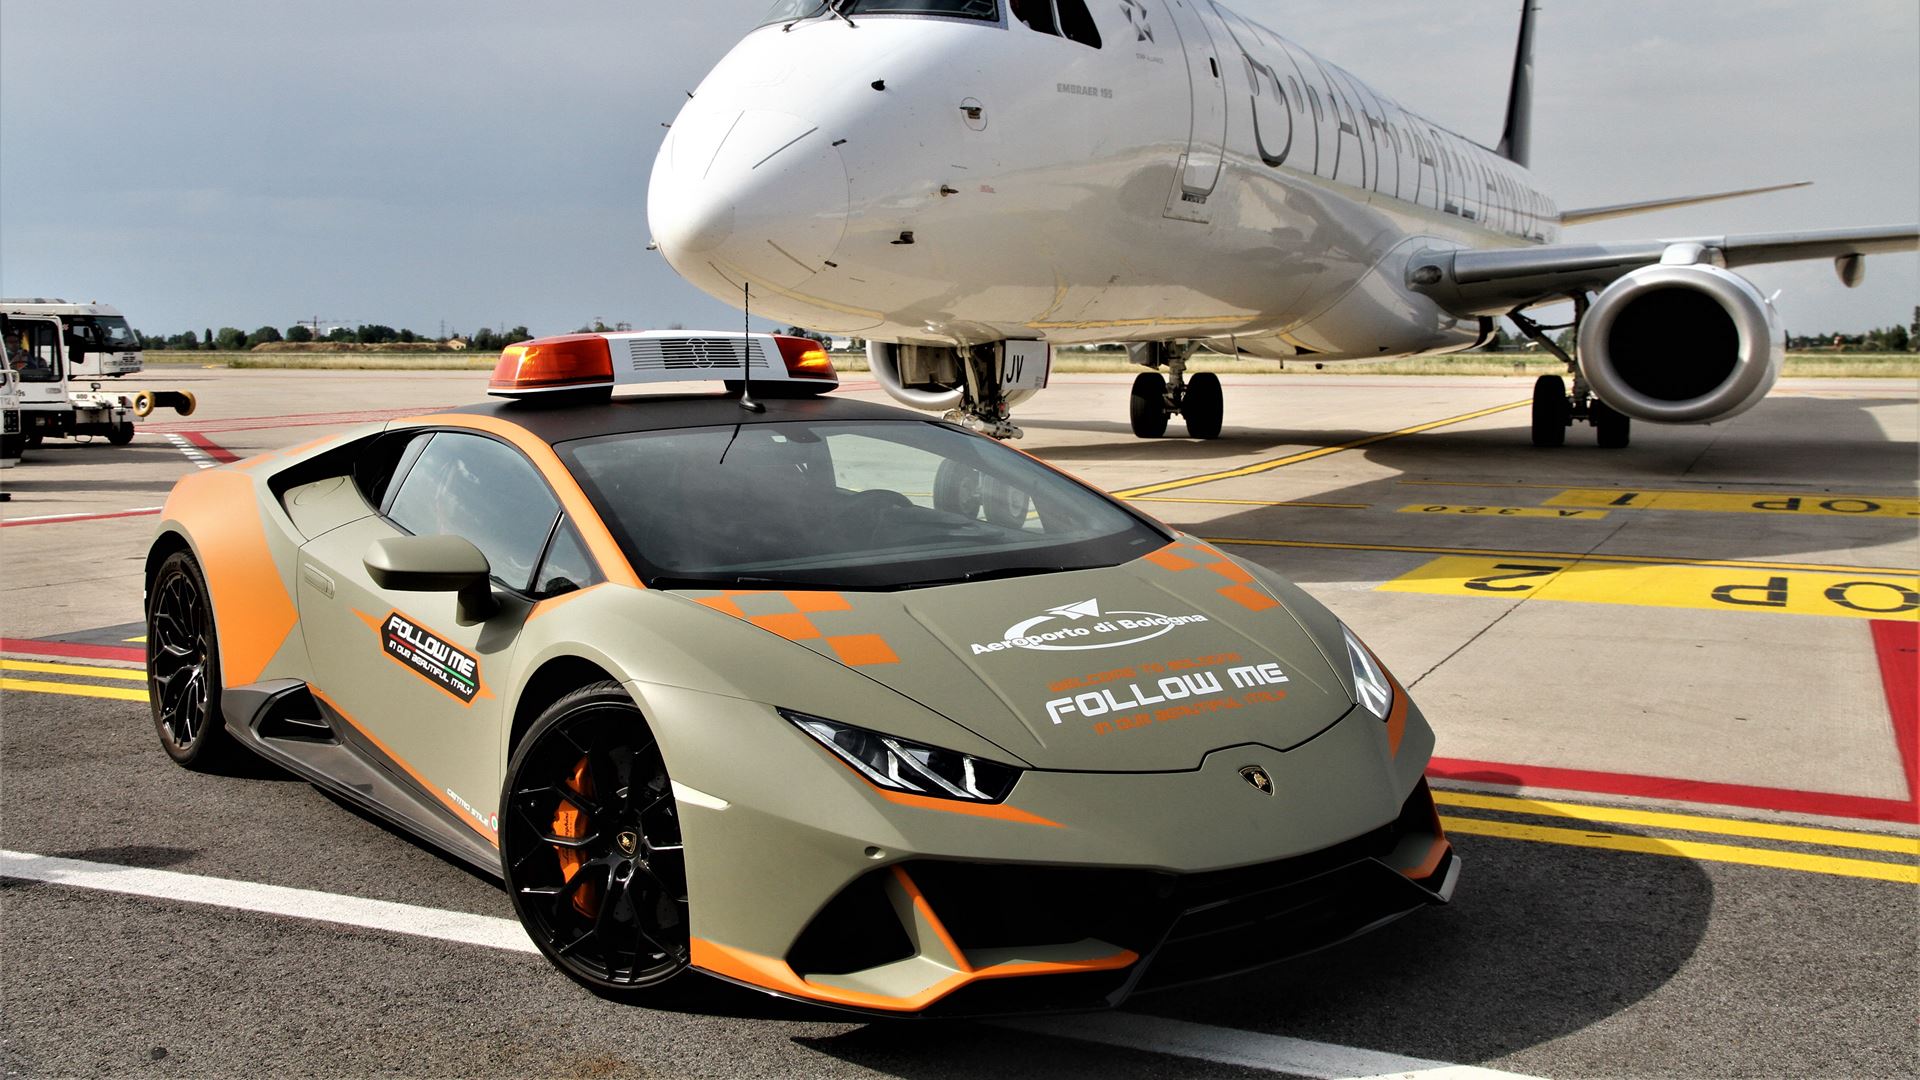 In arrivo una Lamborghini Huracan Evo per l’aeroporto di Bologna